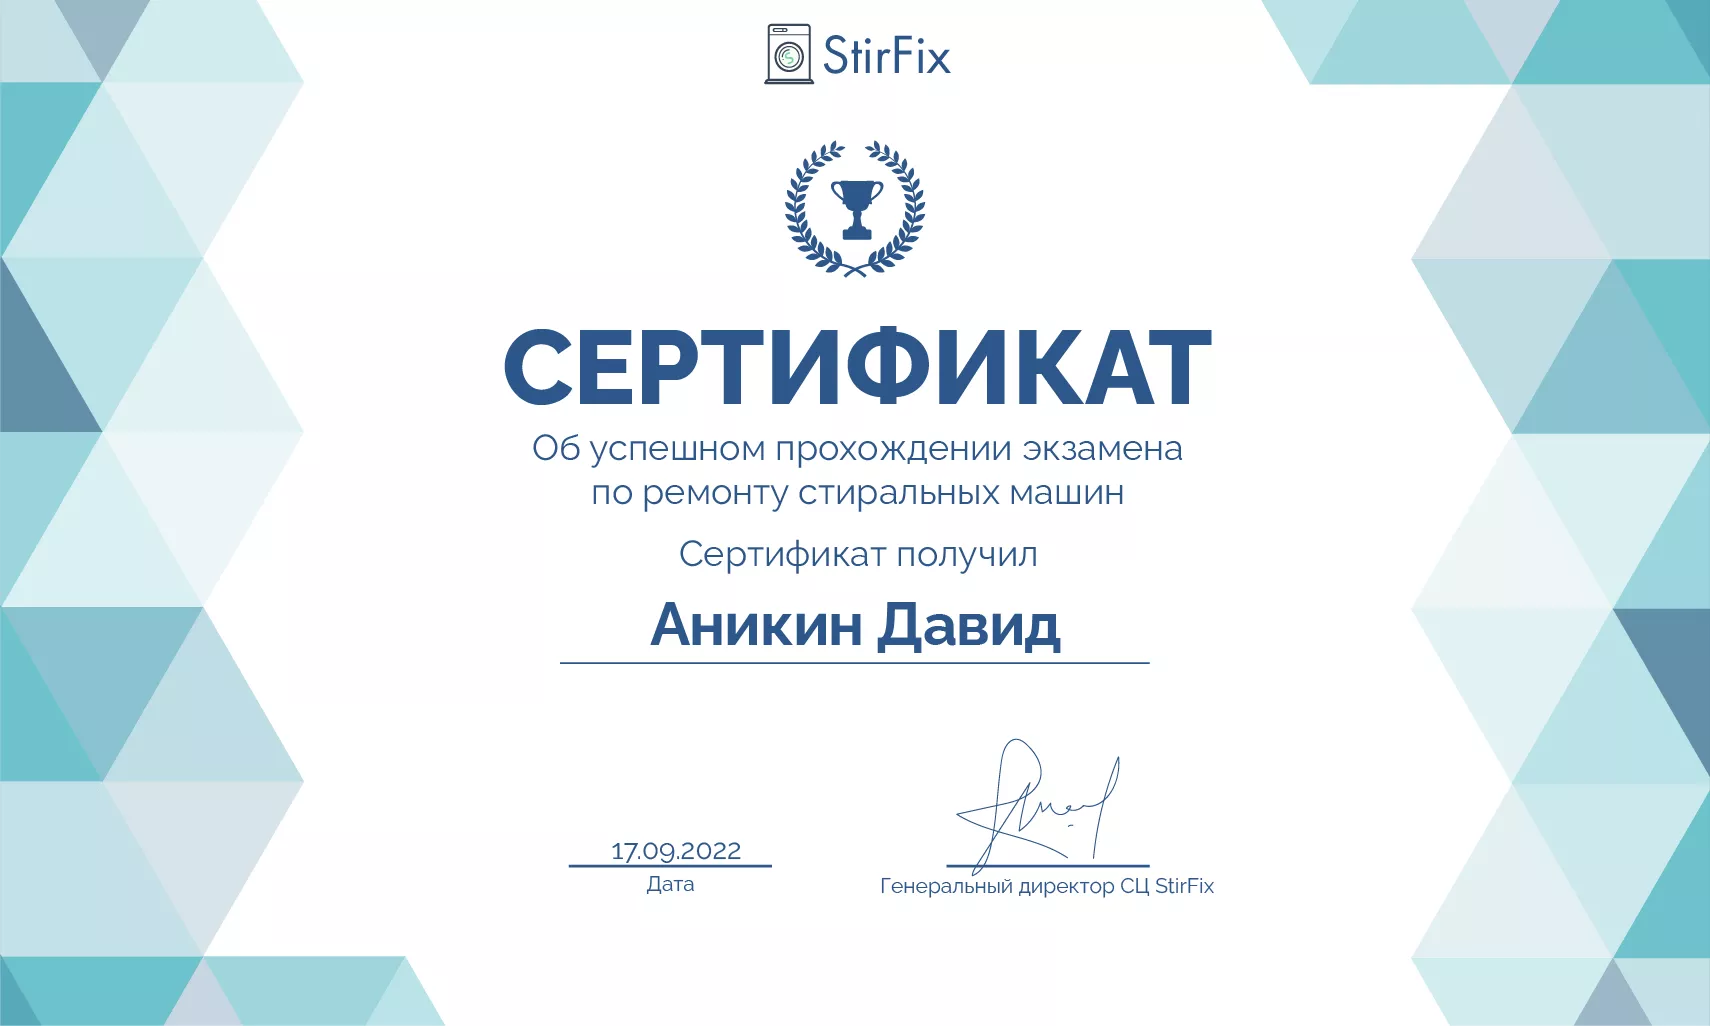 Аникин Давид сертификат мастера по ремонту стиральных машин